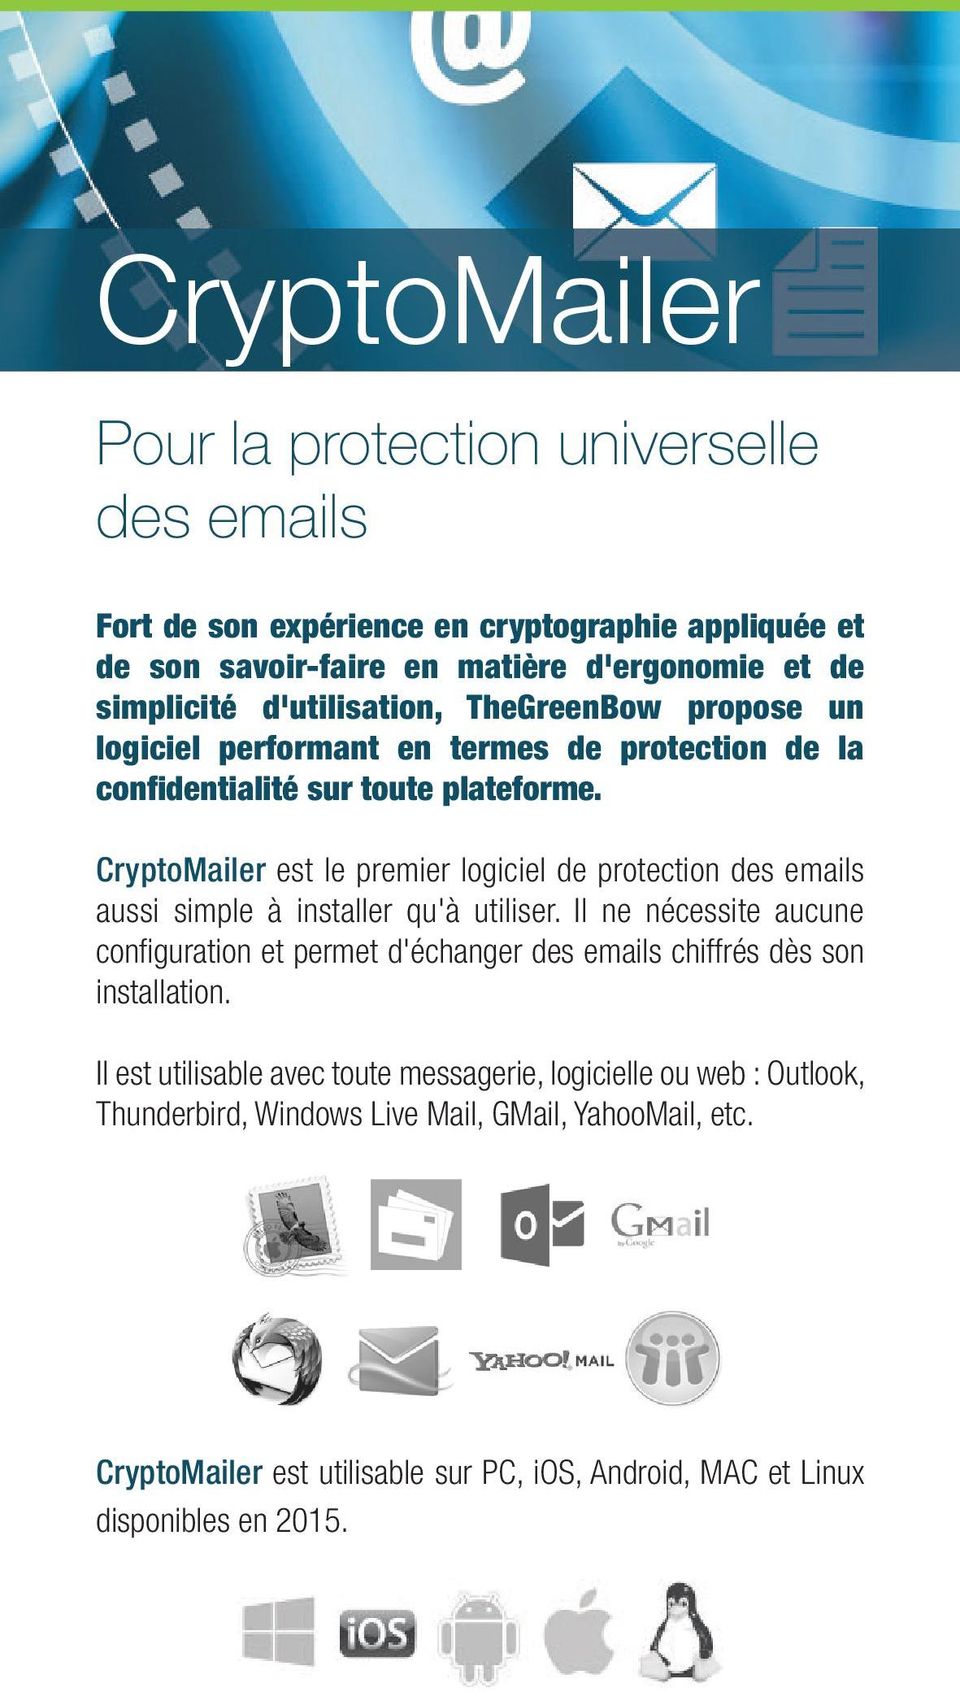 CryptoMailer est le premier logiciel de protection des emails aussi simple à installer qu'à utiliser.